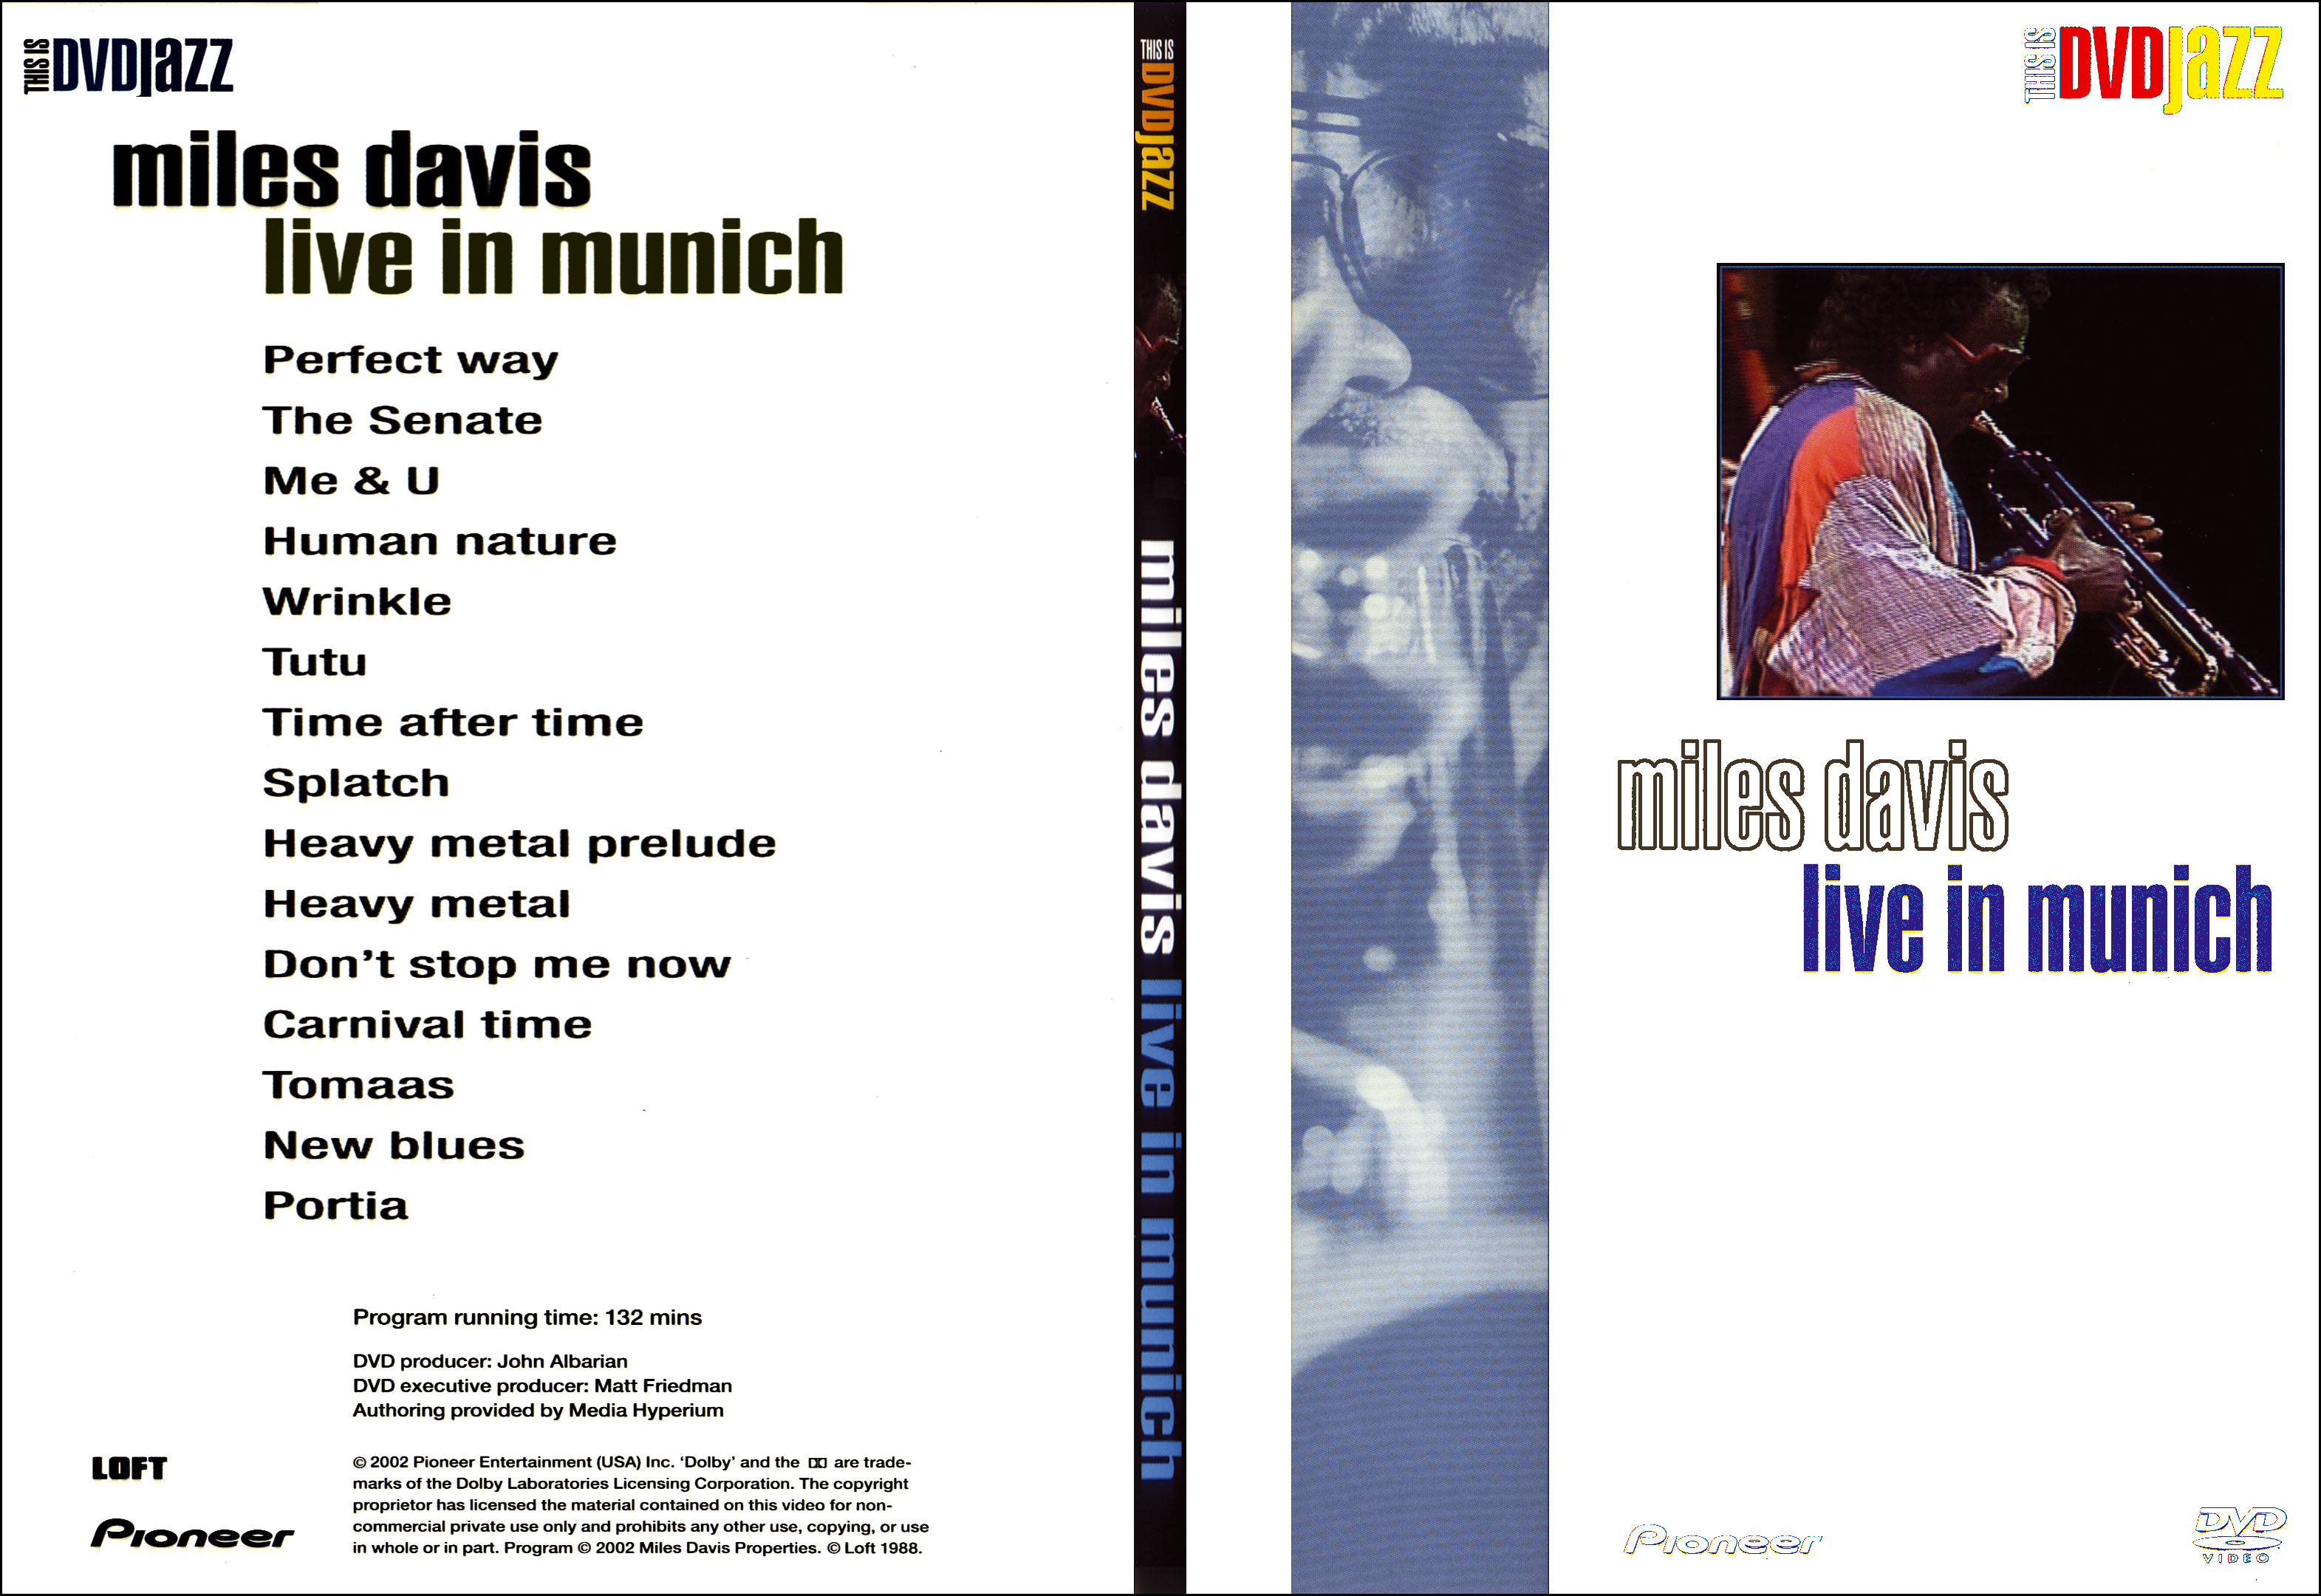 Jaquette DVD Miles Davis live montreux - SLIM